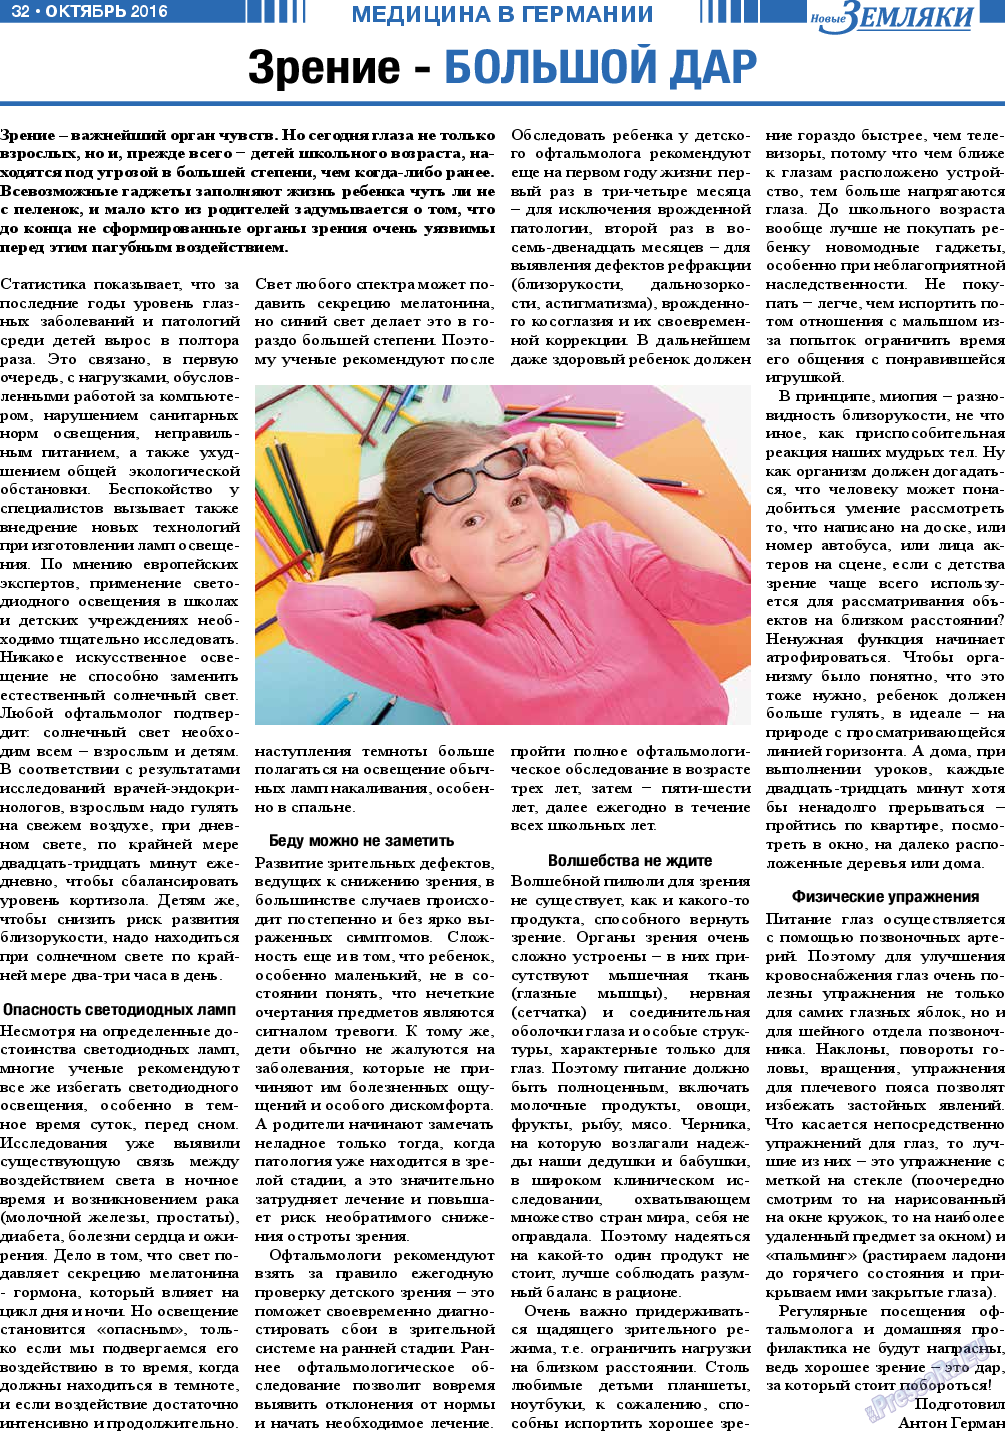 Новые Земляки (газета). 2016 год, номер 10, стр. 32